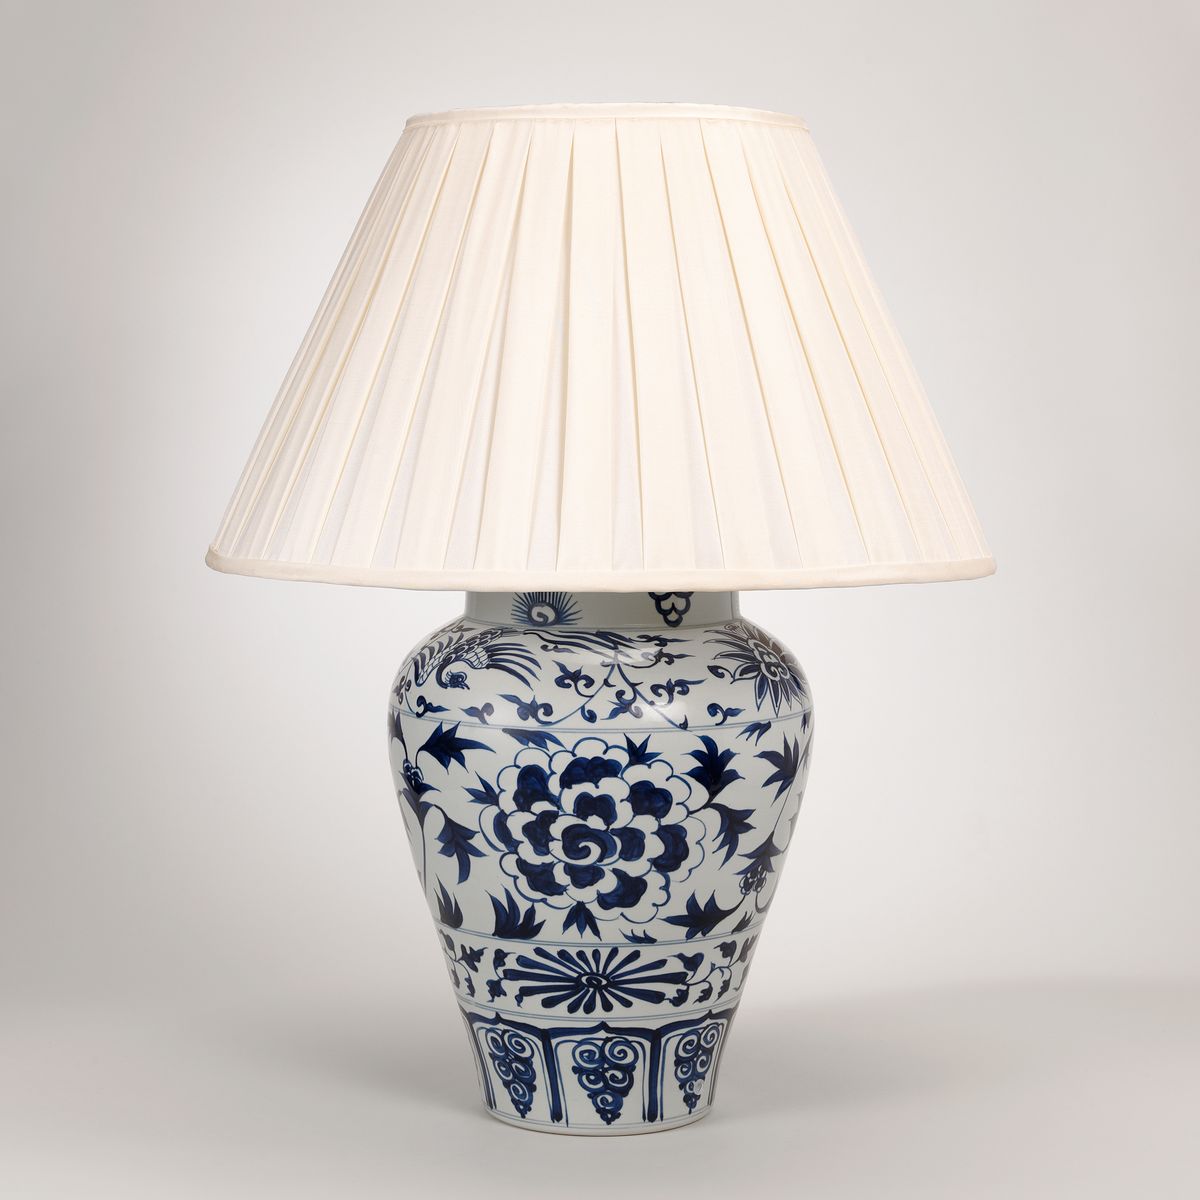 Yuan Underglaze Jar Table Lamp